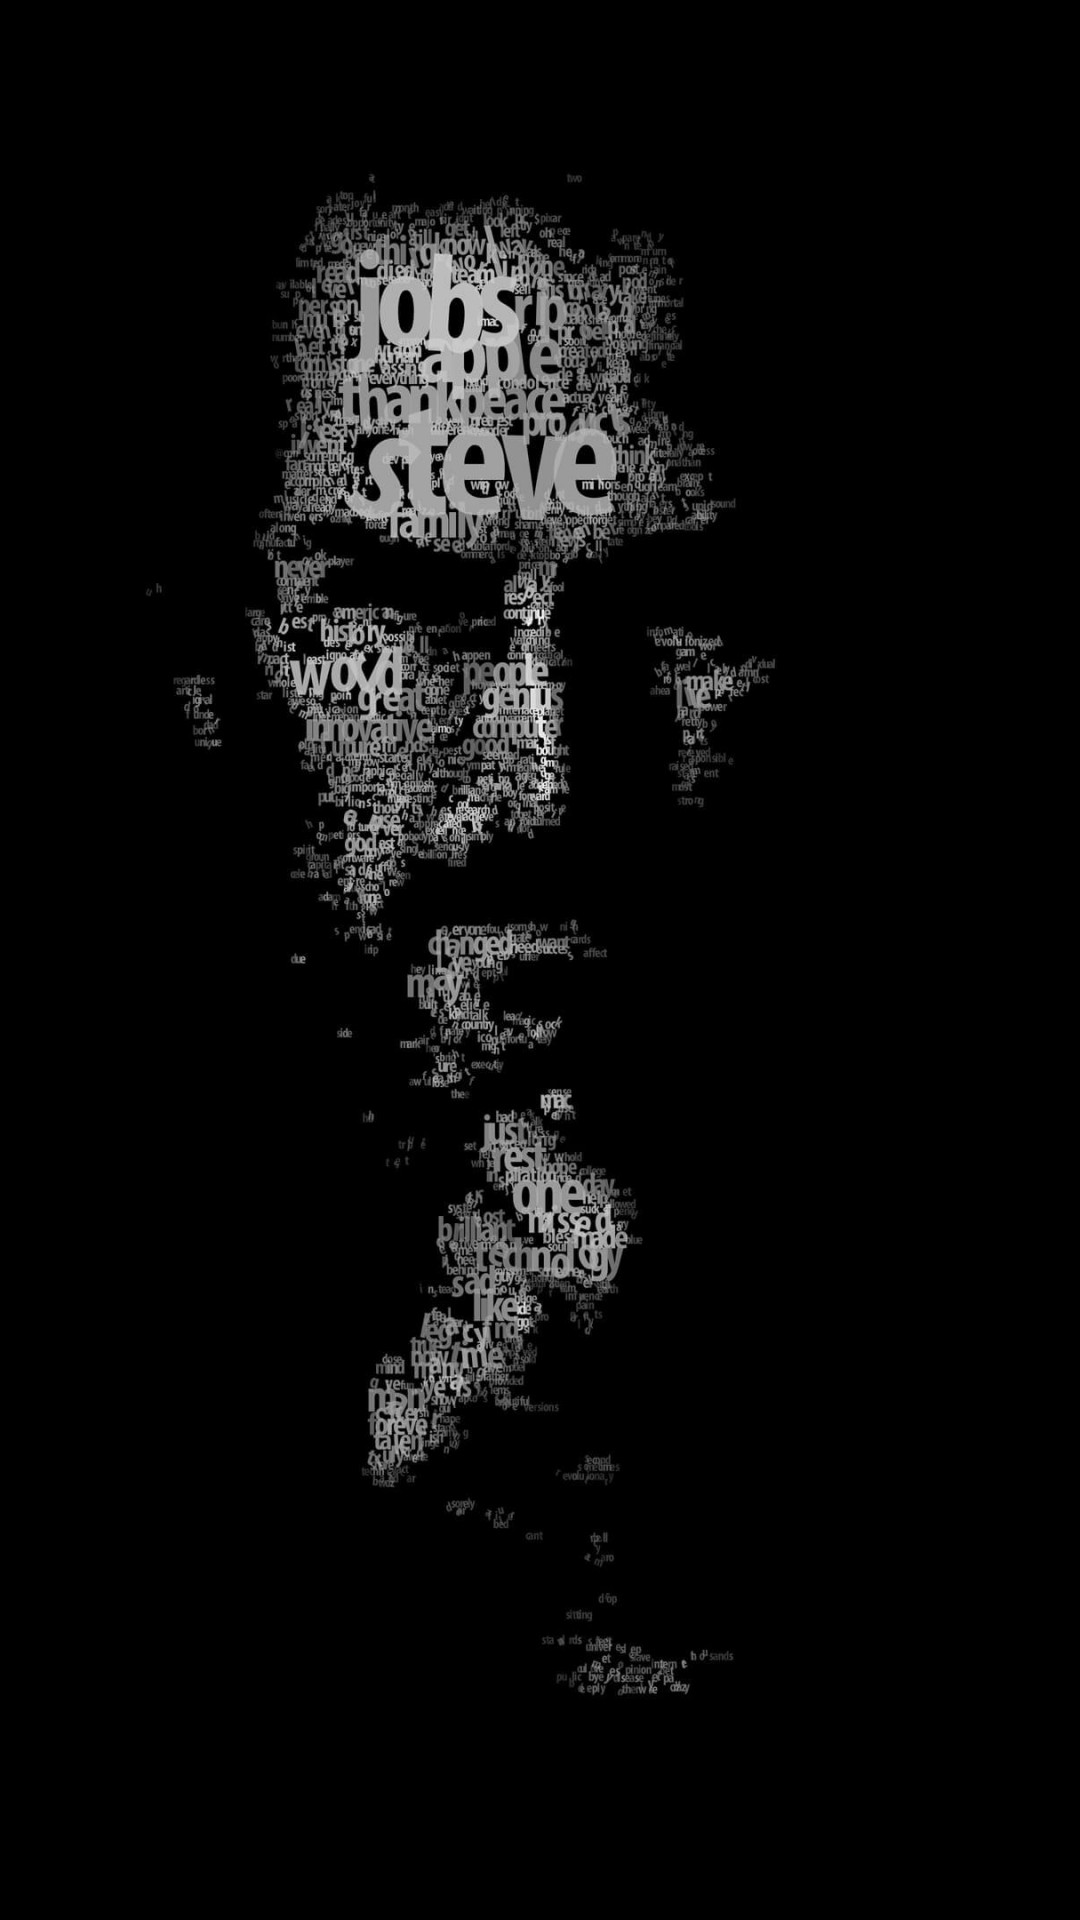 Typeface Portrait of Steve Jobs Wallpaper for LG G2